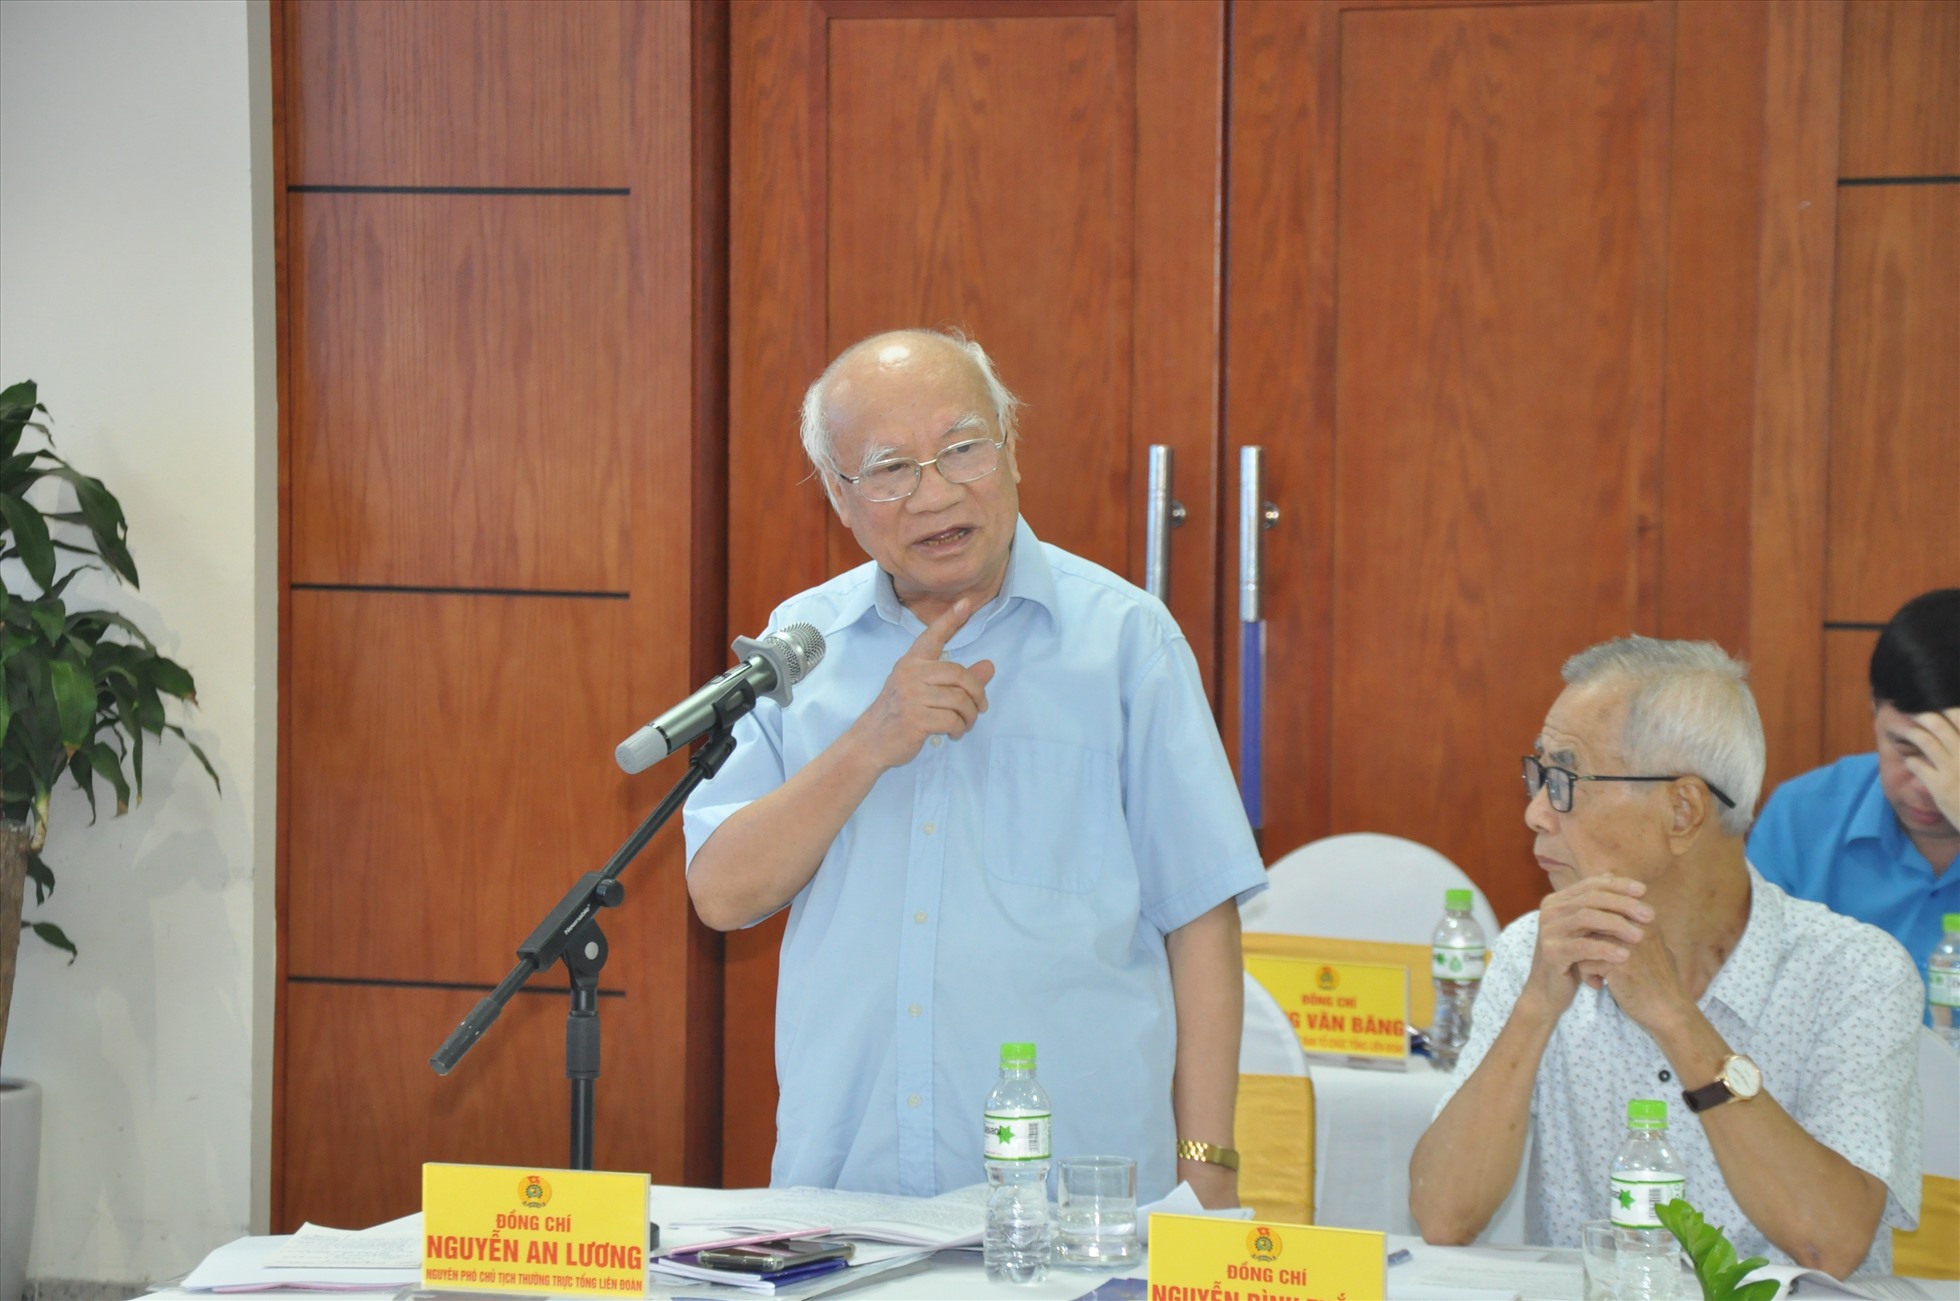 Ông Nguyễn An Lương - Phó Chủ tịch Tổng Liên đoàn Lao động Việt Nam - góp ý tại hội thảo. Ảnh: Quế Chi